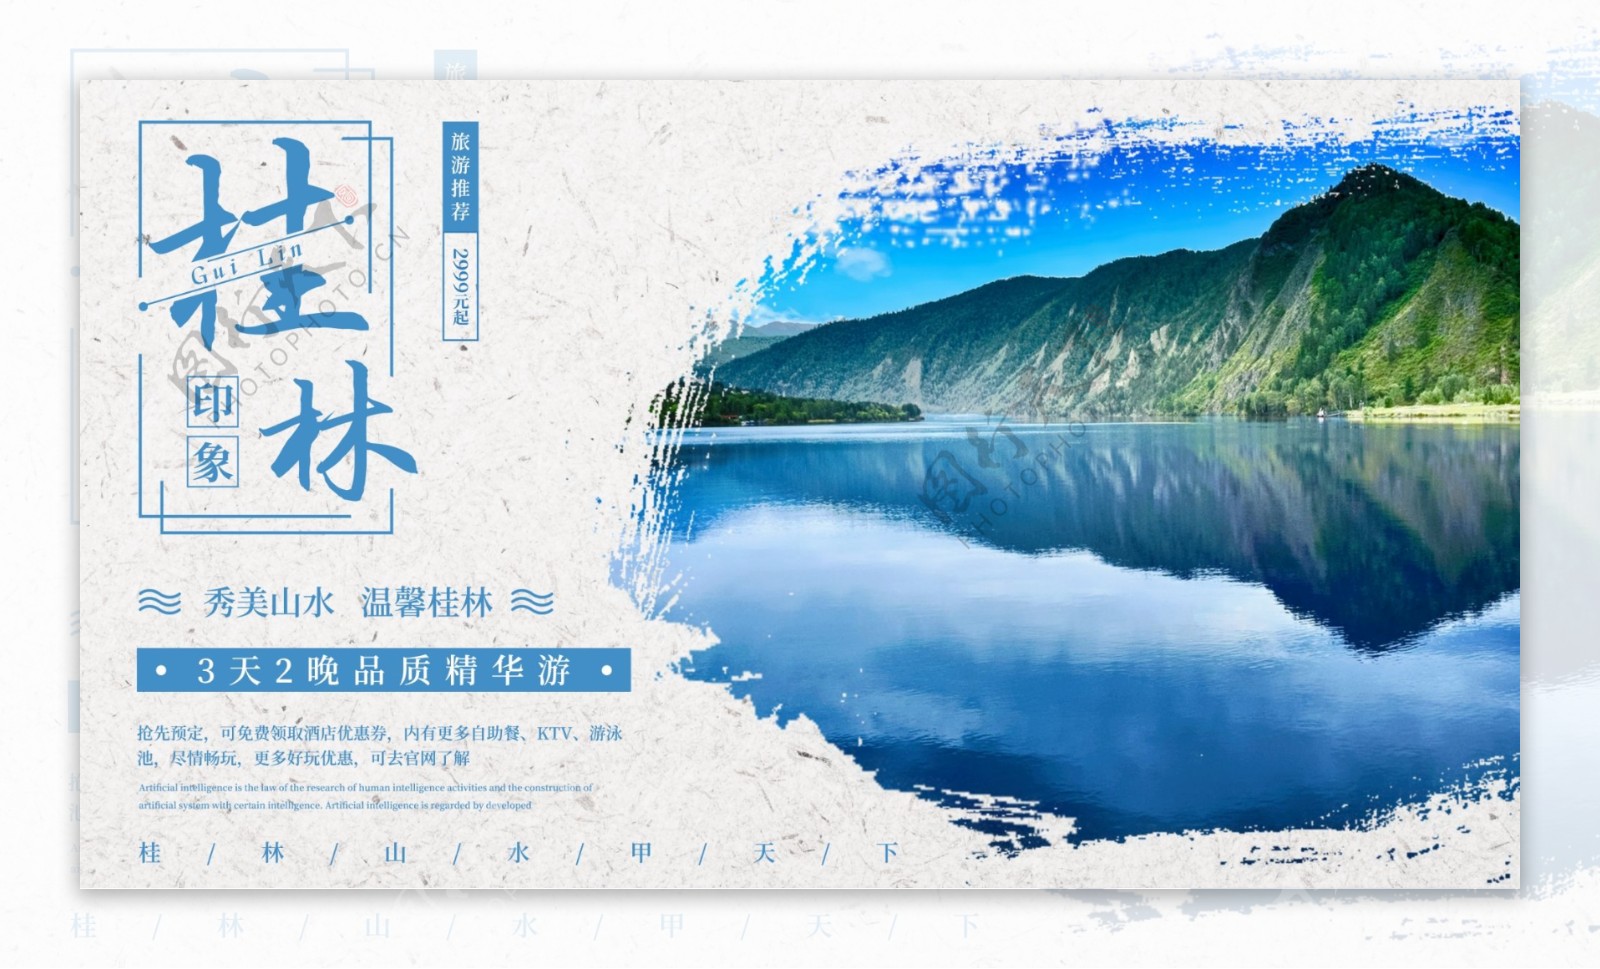 桂林山水旅游度假宣传海报